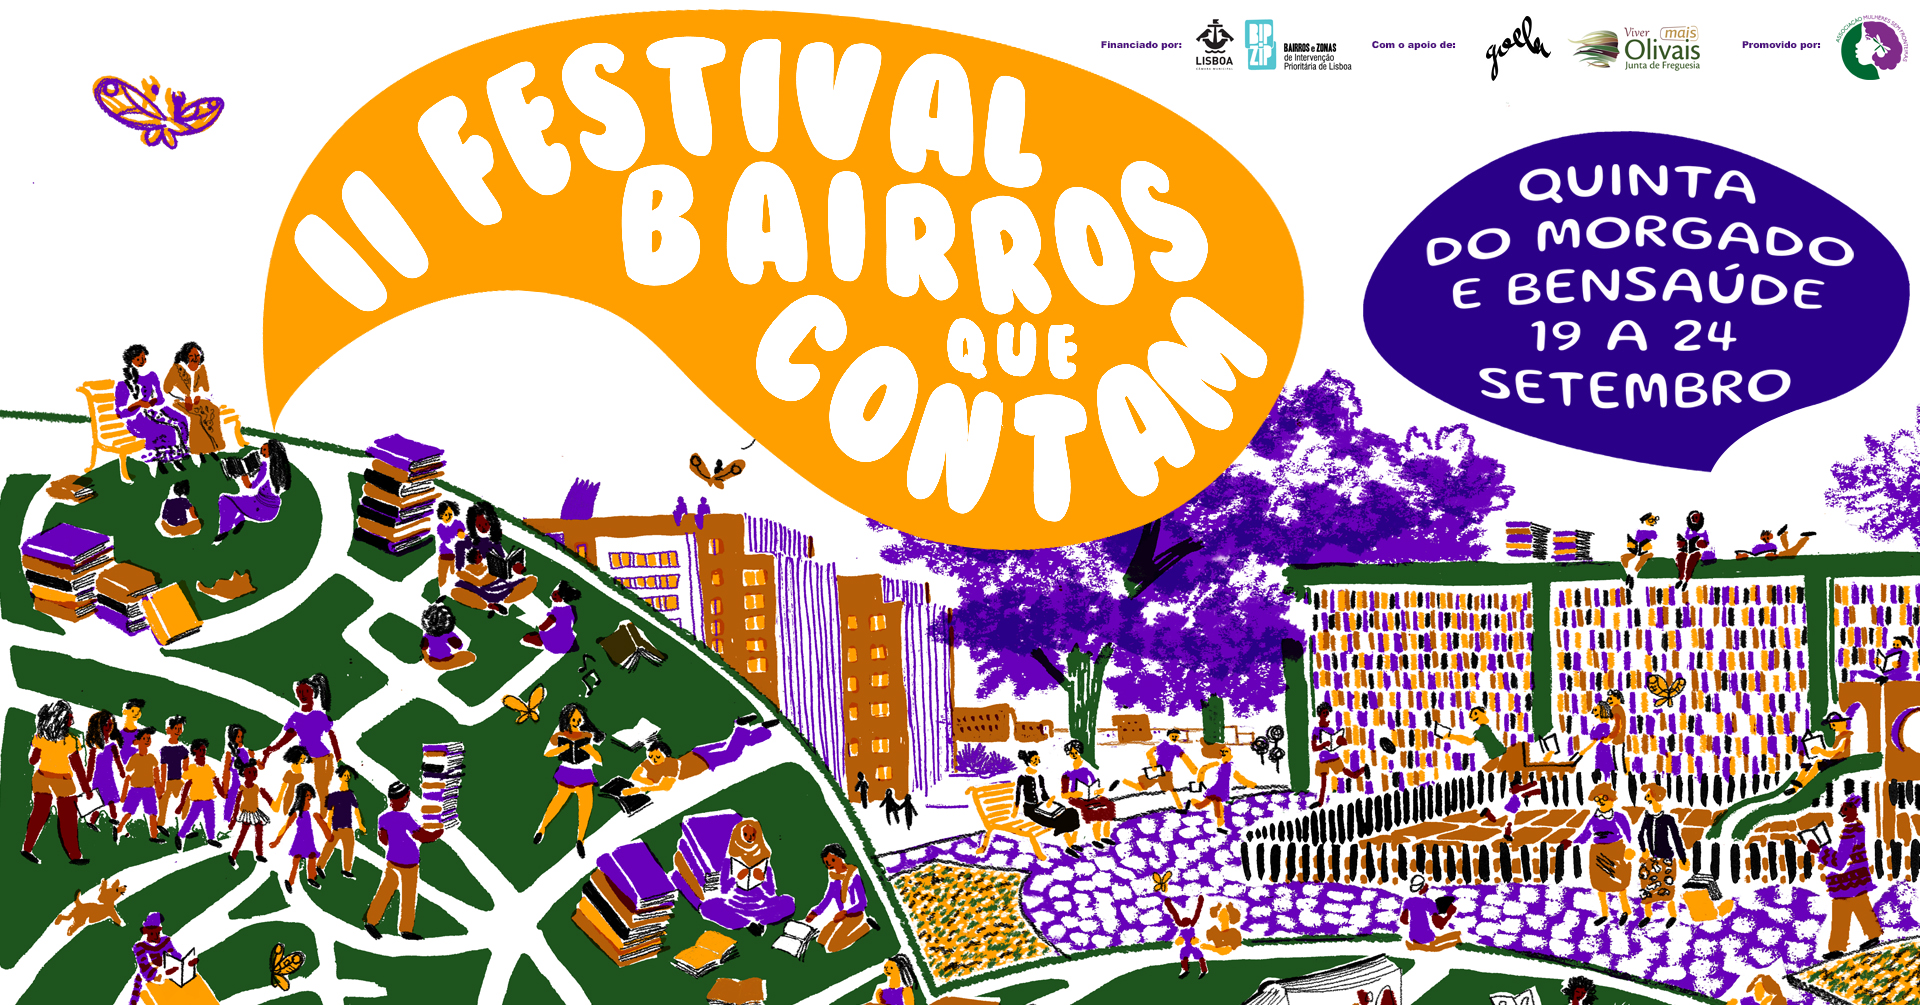 II Festival Bairros que Contam Quinta do Morgado e Bensaúde